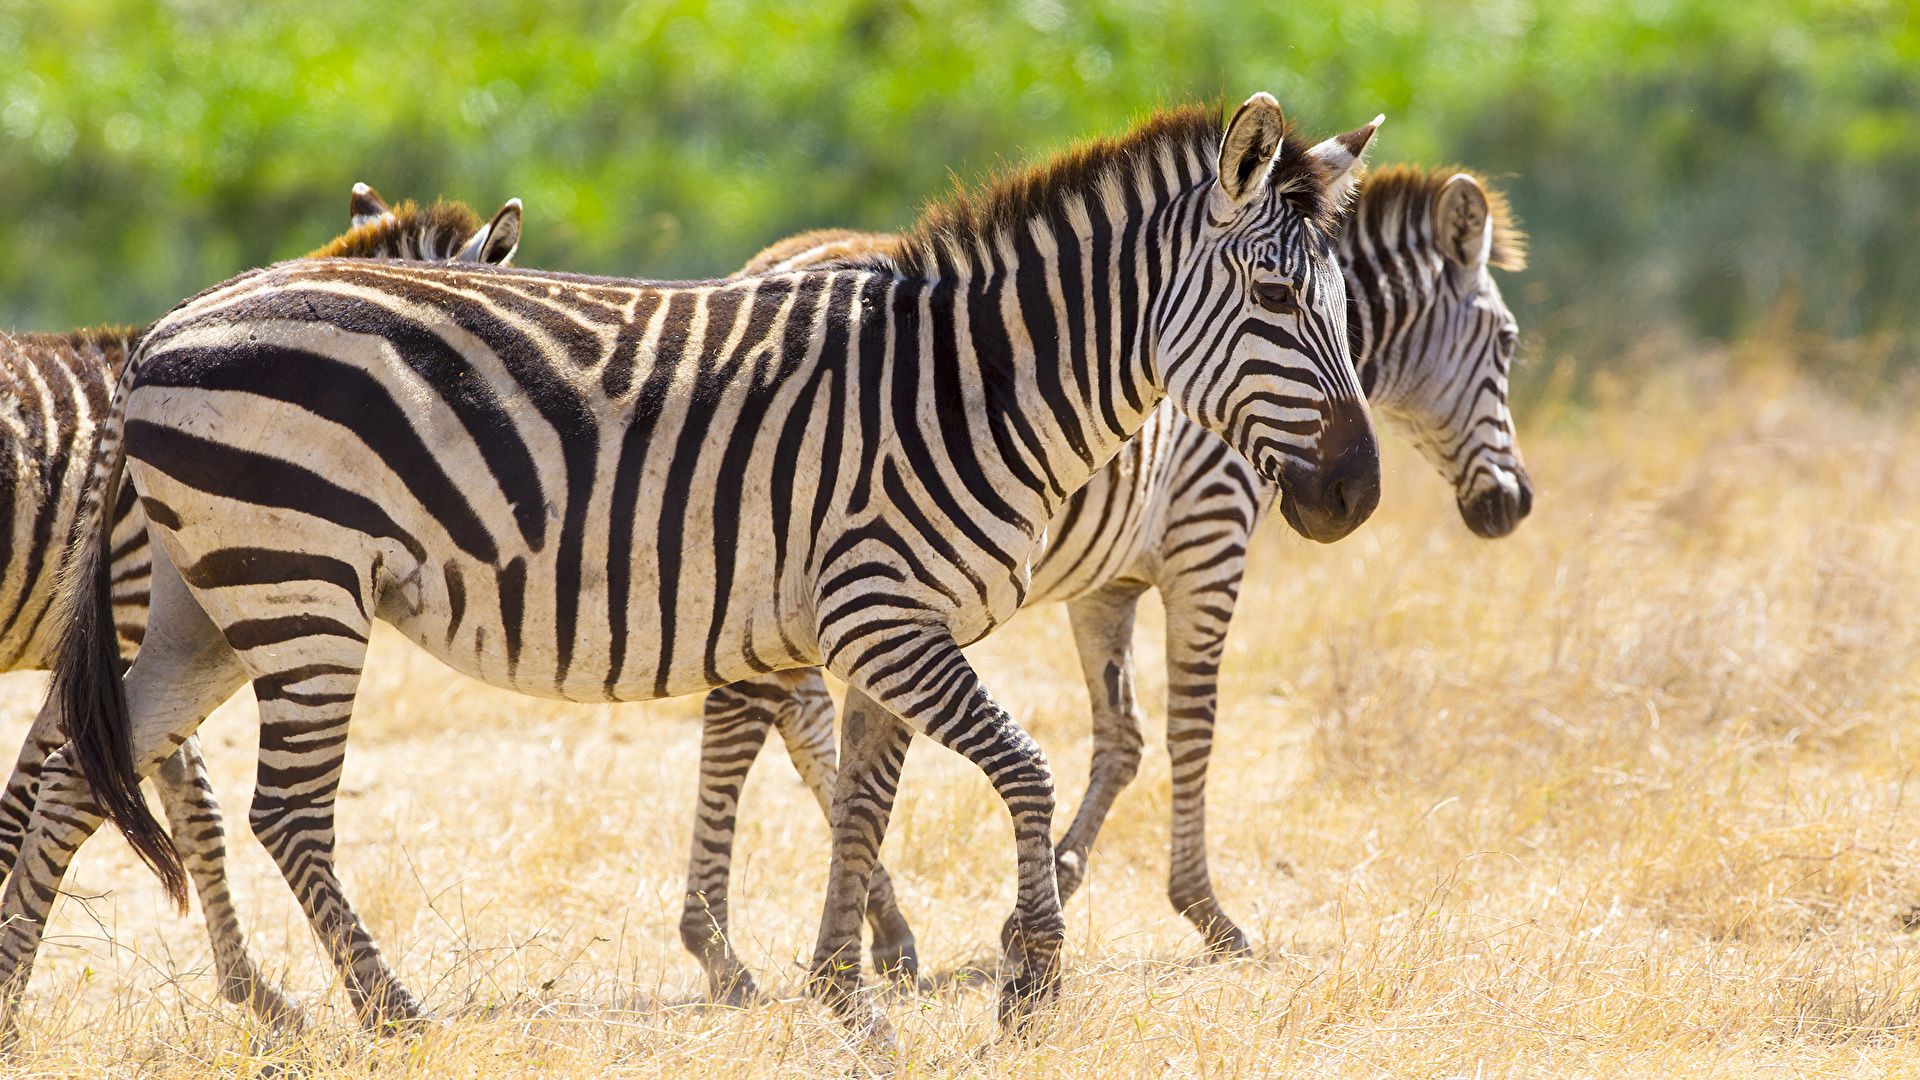 Zebra Photo